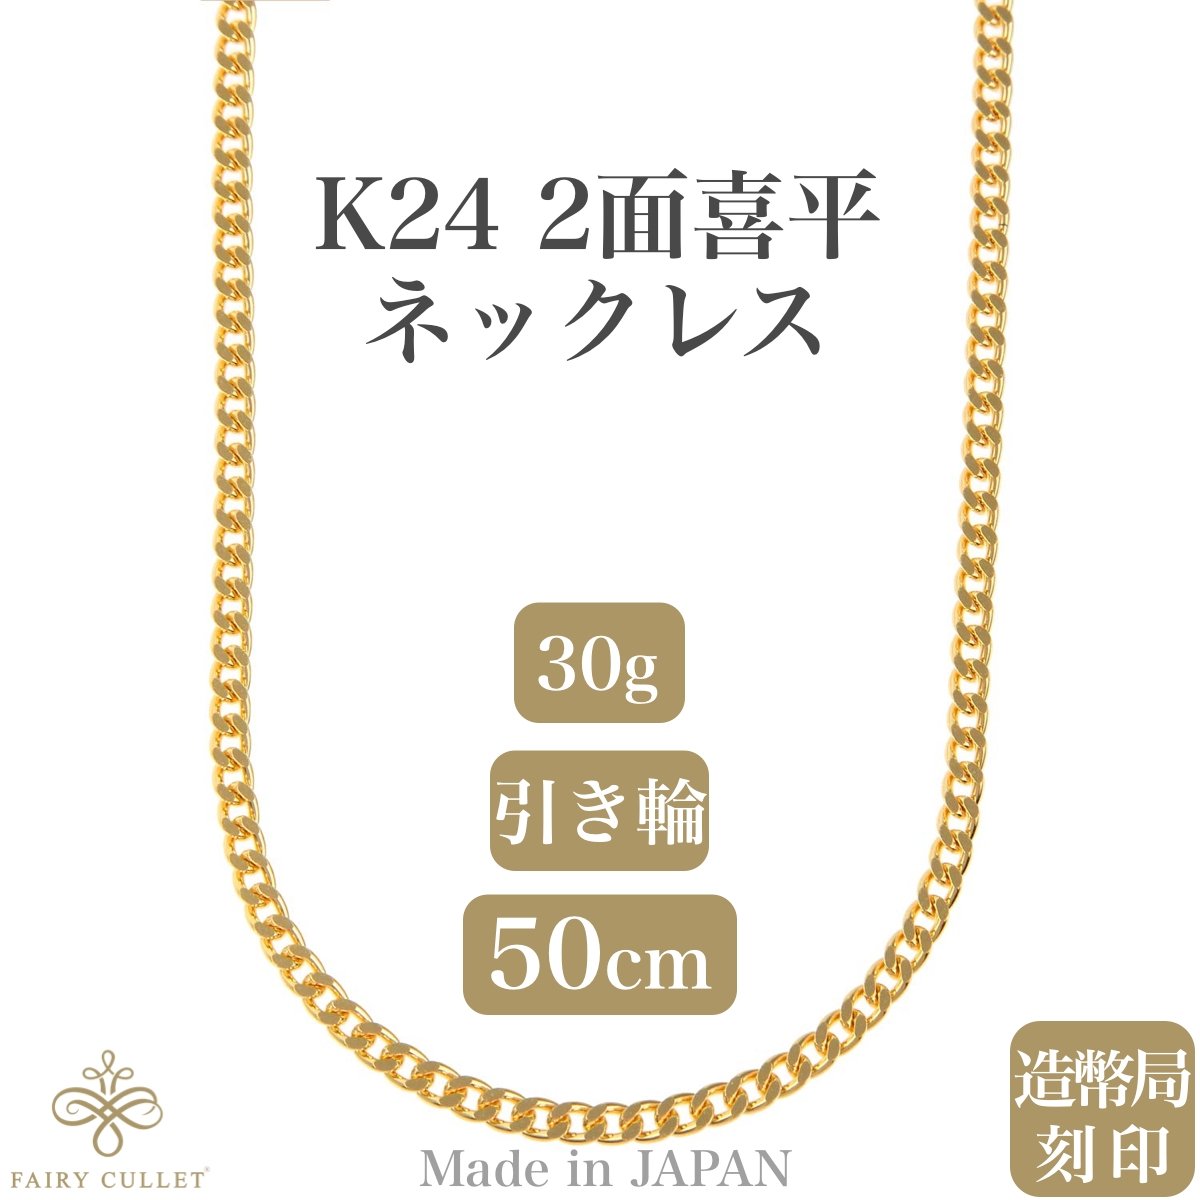 24金ネックレス K24 2面喜平チェーン 日本製 純金 検定印 30g 50cm